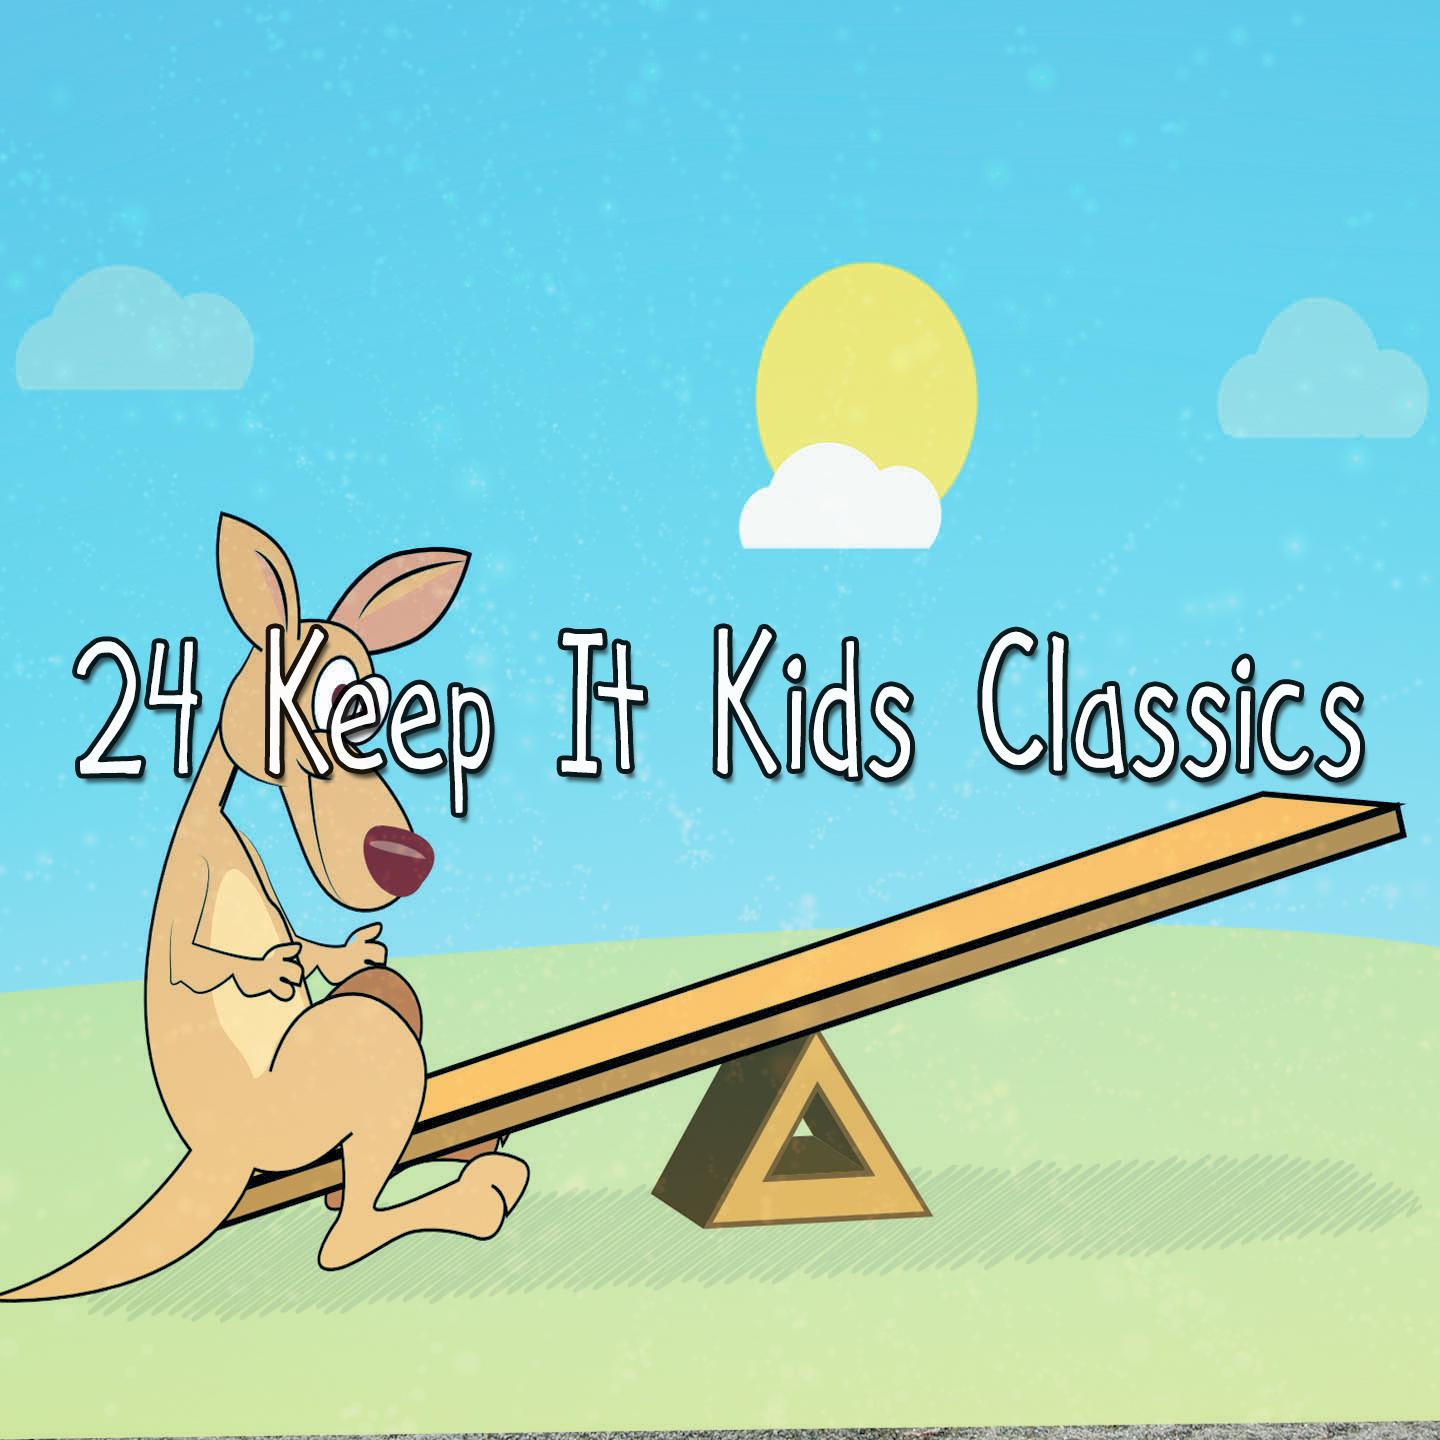 24 Keep It Kids Classics